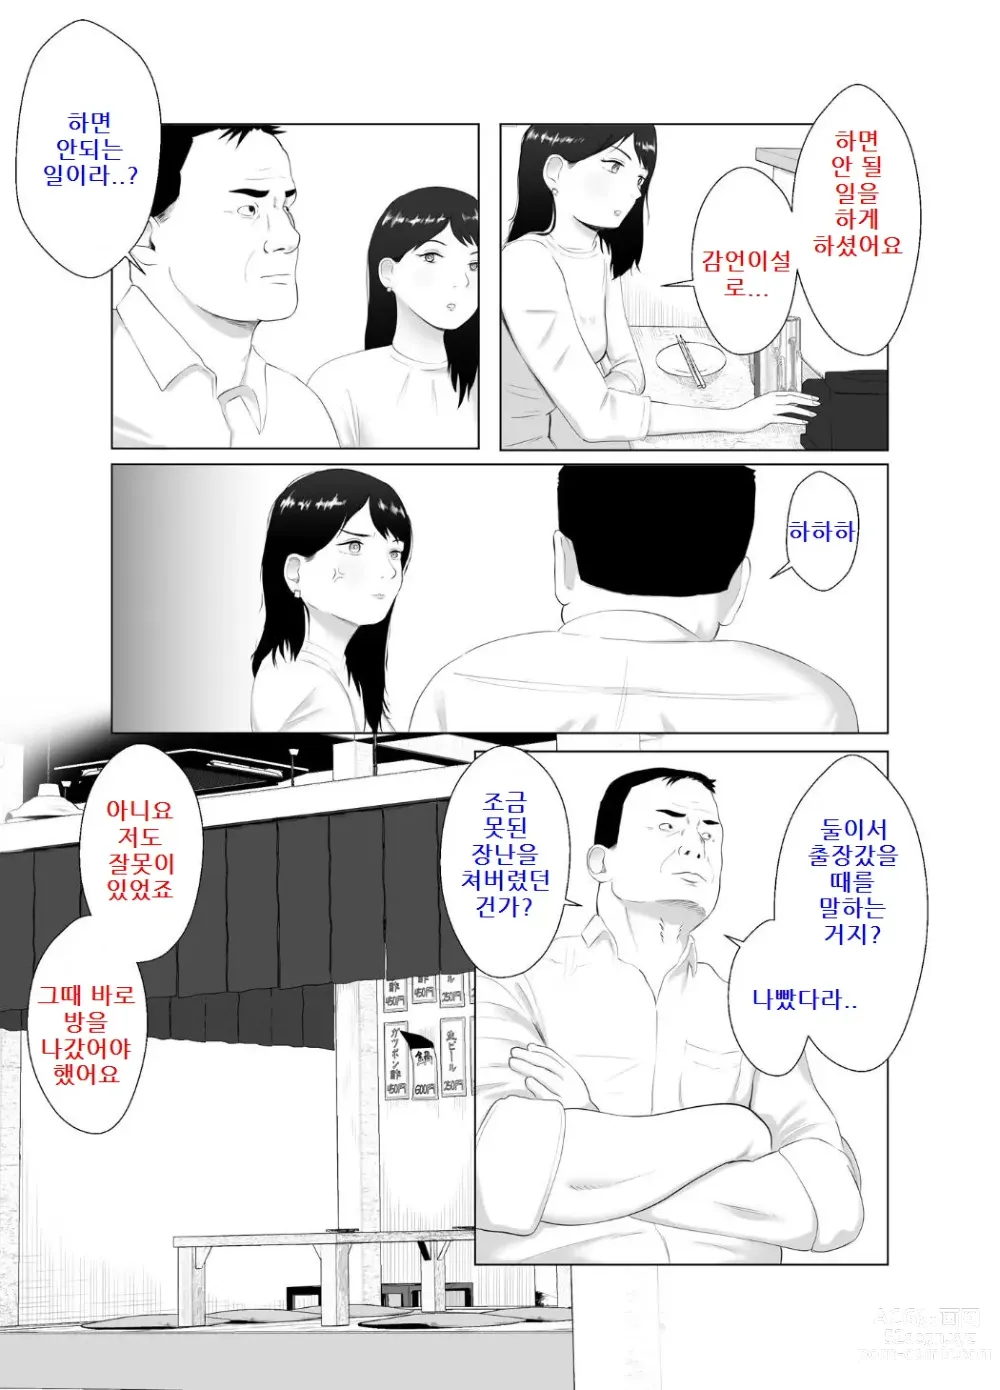 Page 23 of doujinshi 네토라세 검토해주세요 3, ~배덕의 늪에 어서와요~